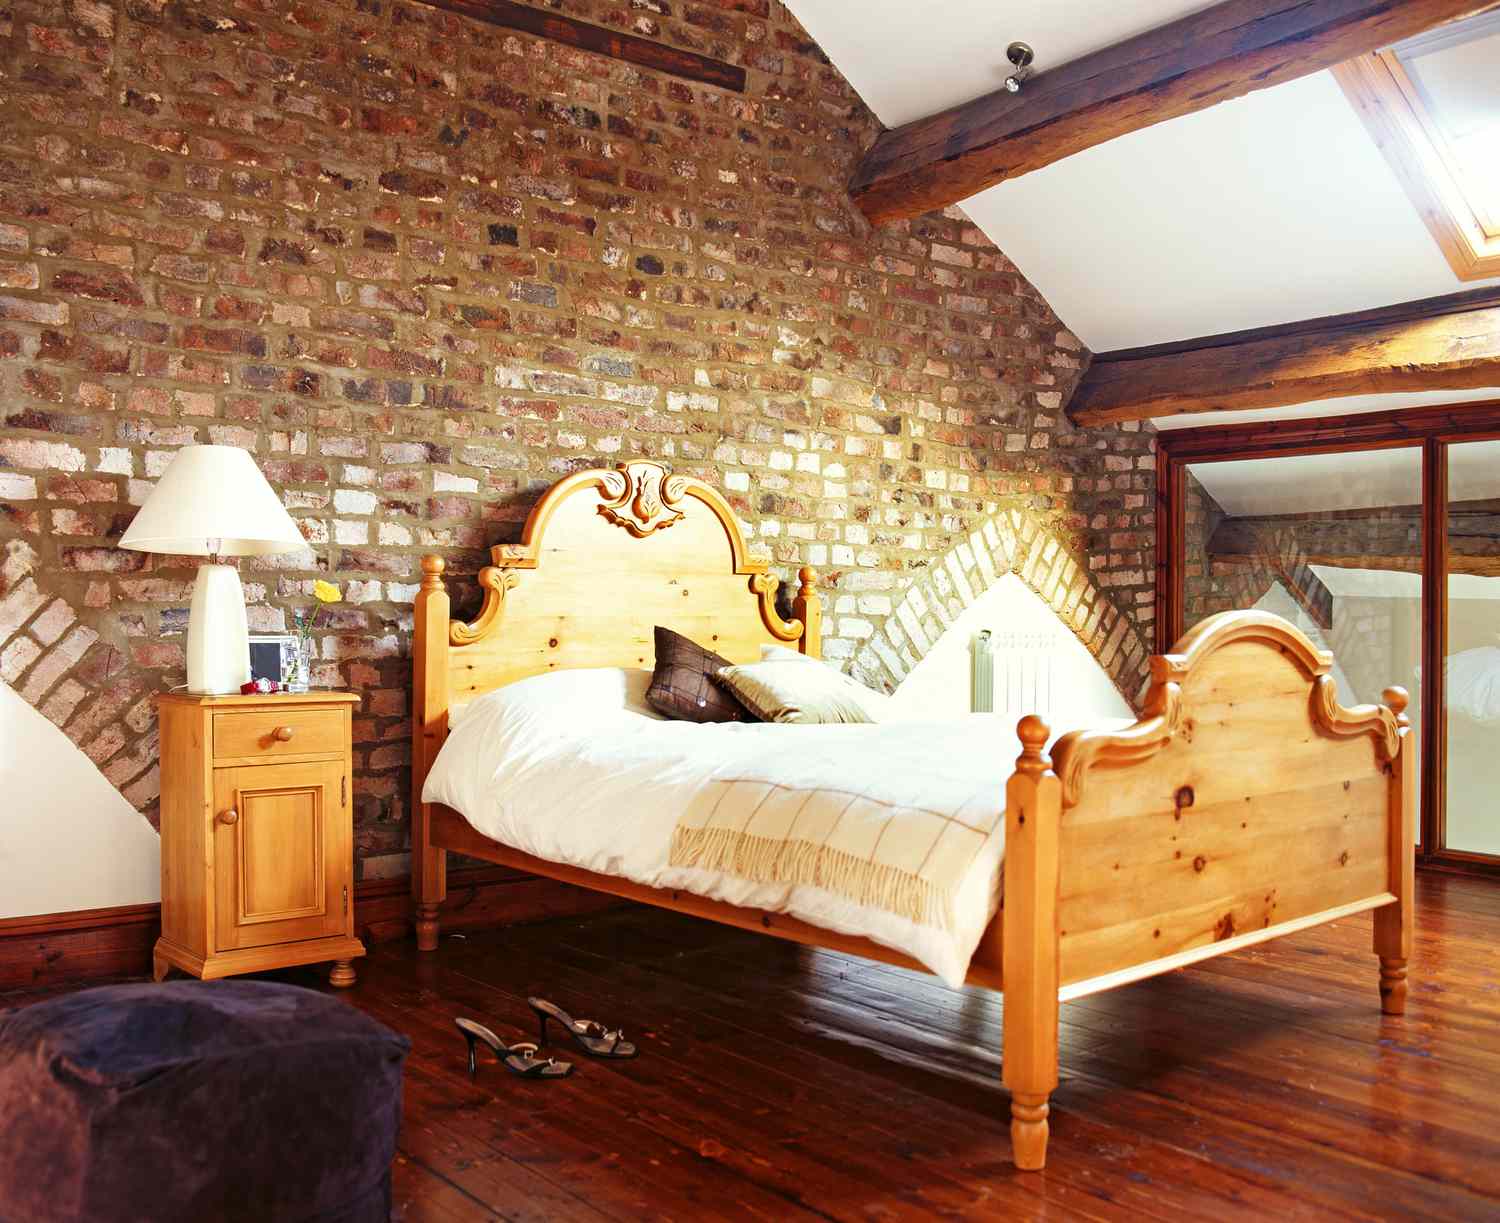 Una cama de matrimonio con estructura de madera se coloca en un altillo